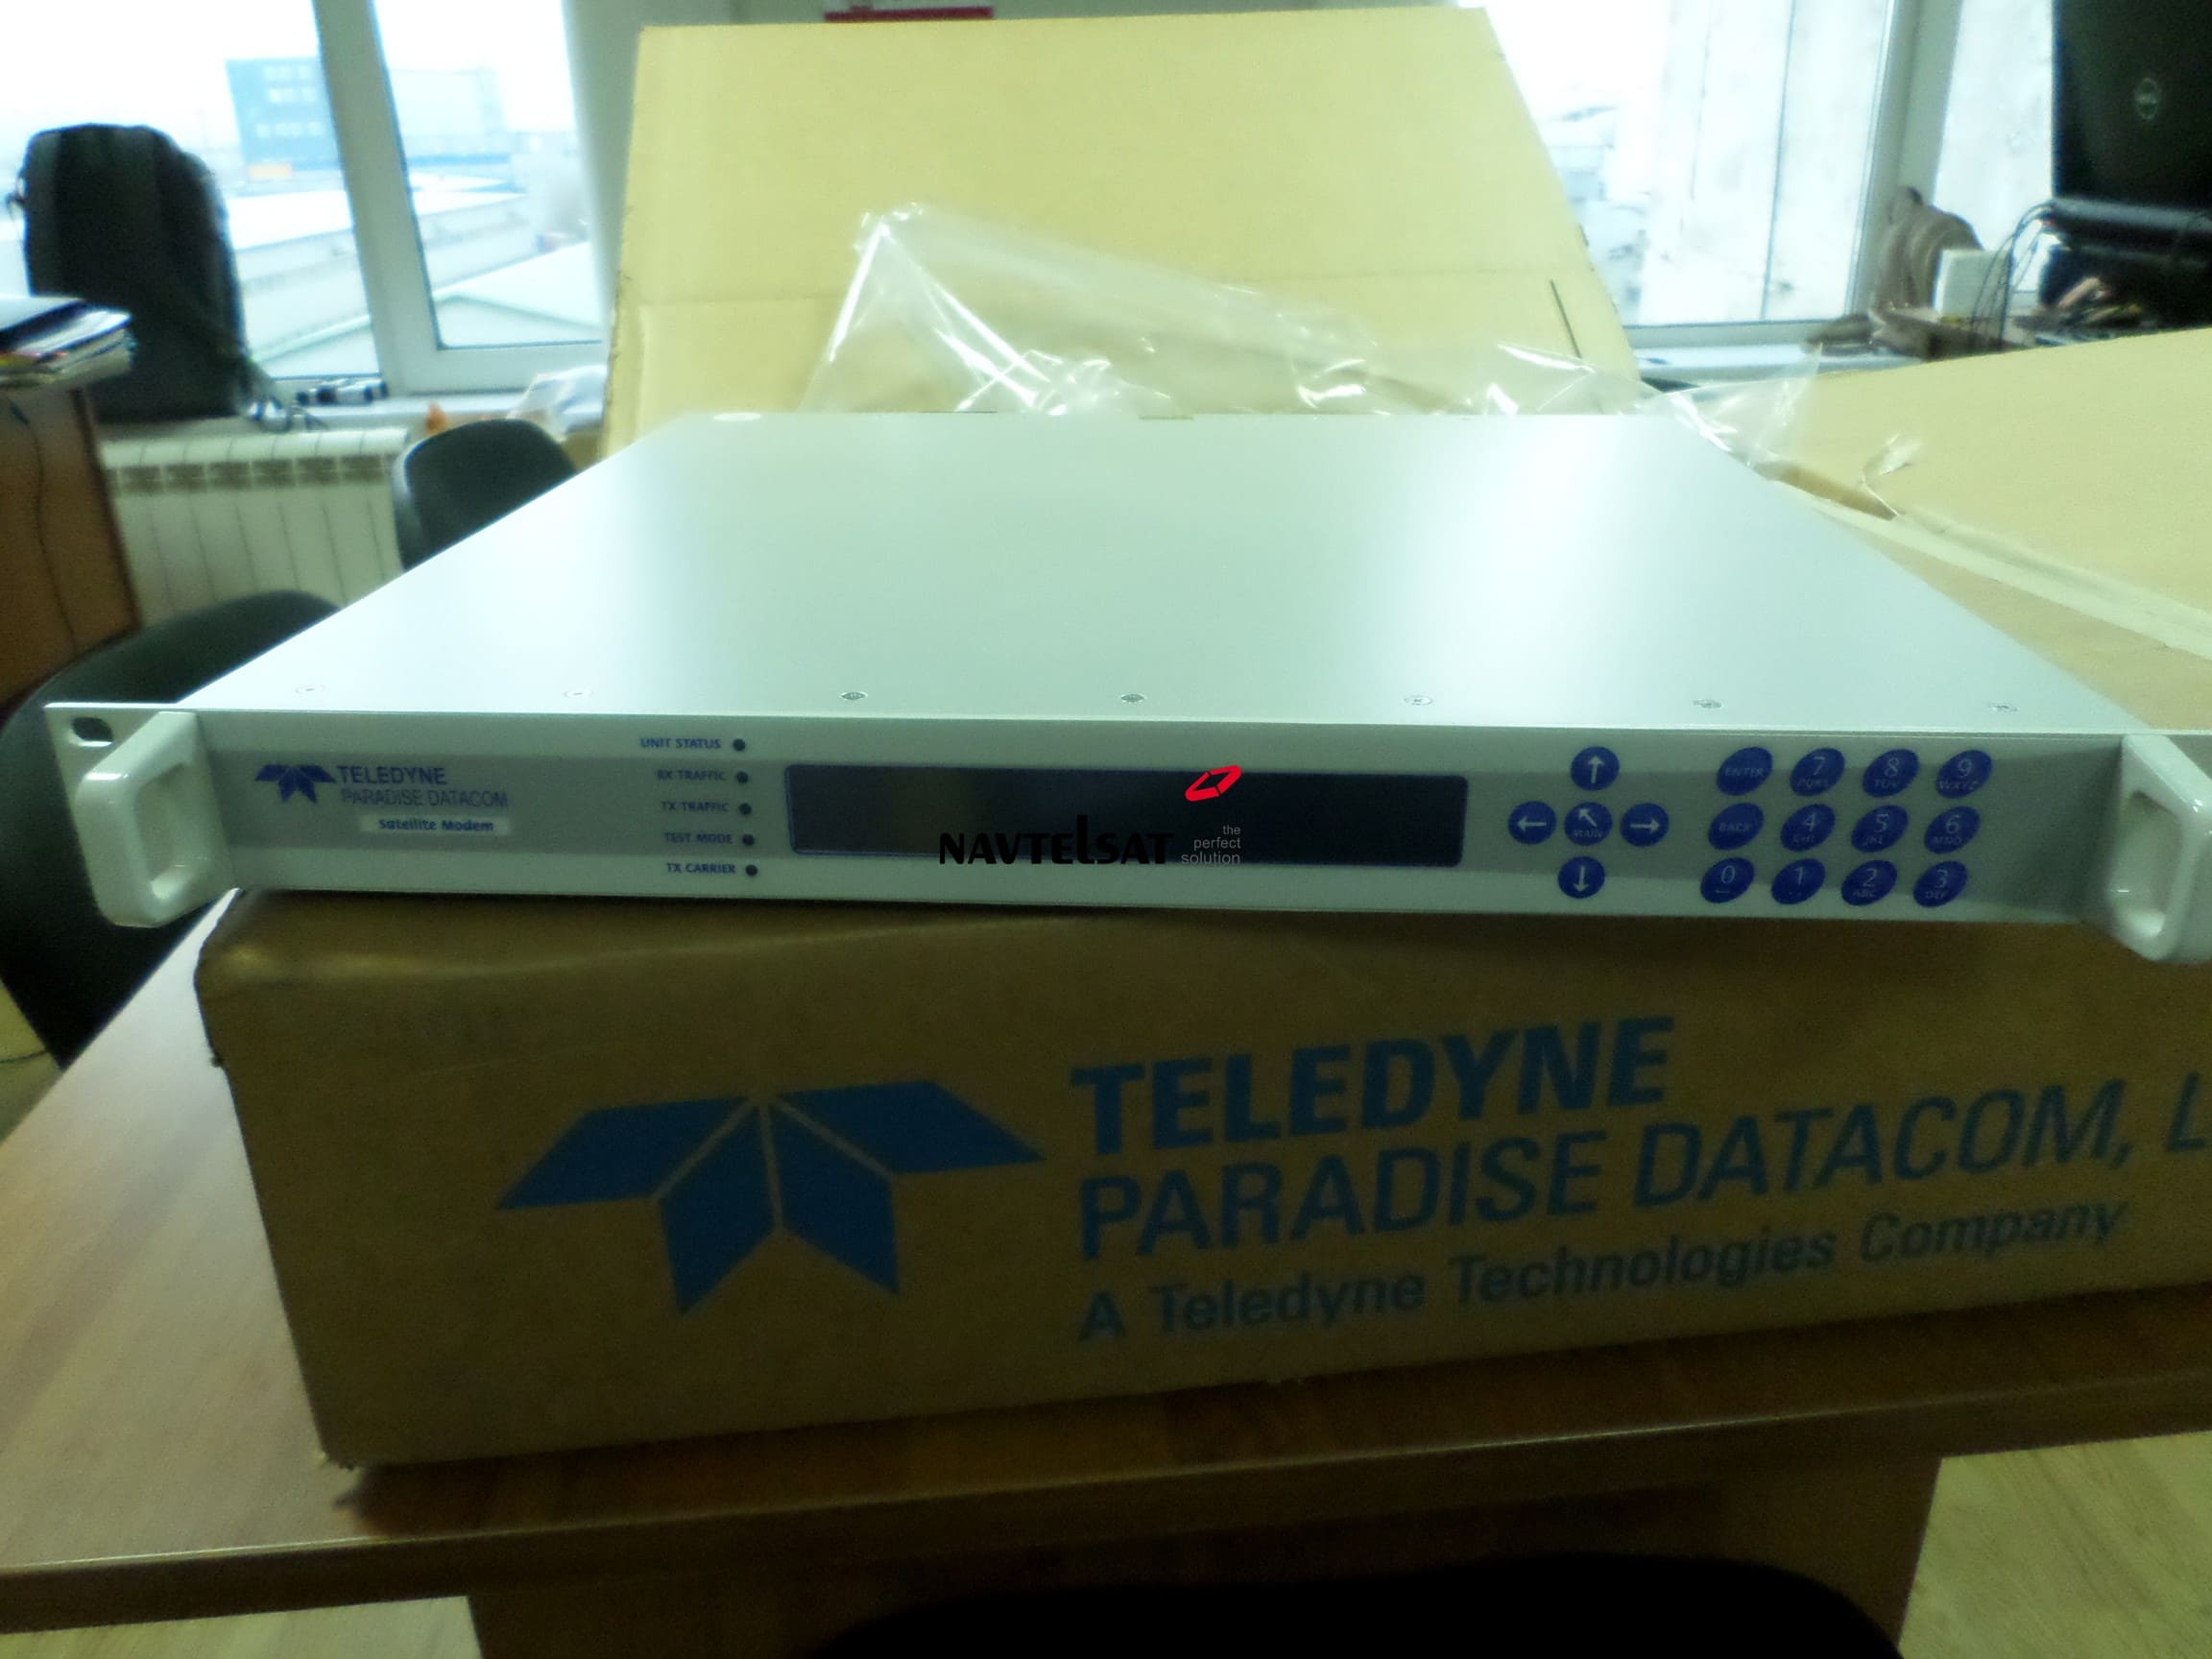 Компания Navtelsat осуществила поставку оборудования Teledyne Paradise Datacom